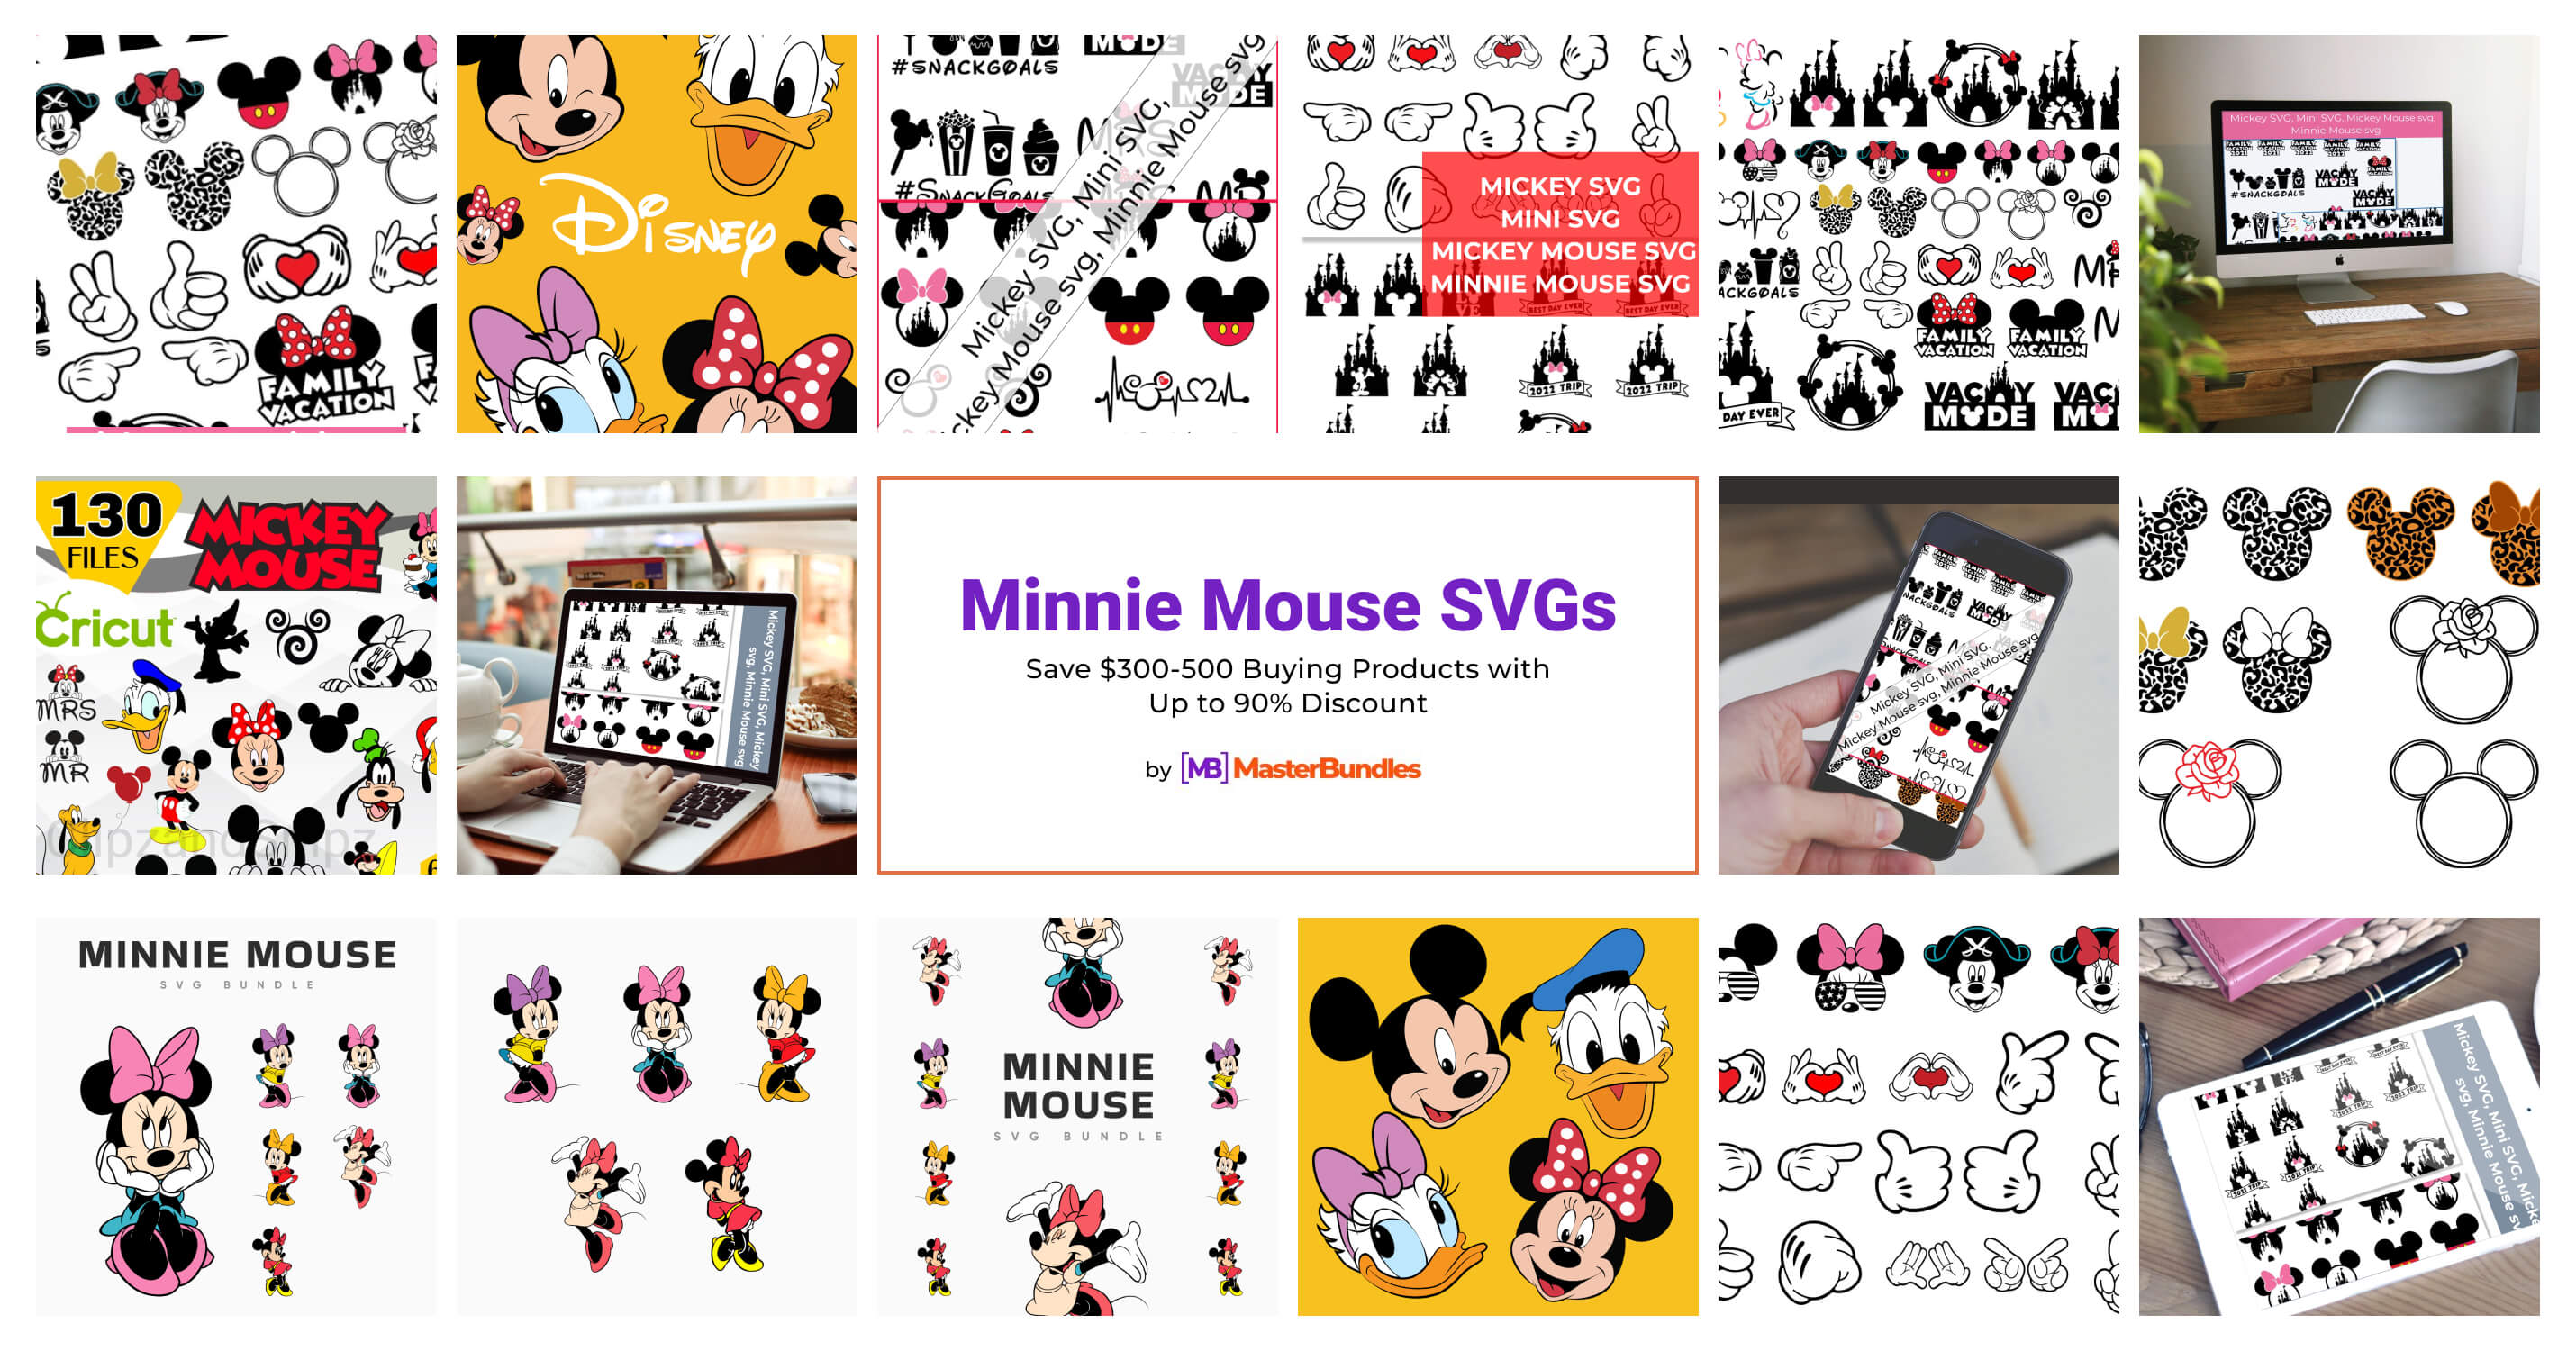 Baby Minnie Mouse Louis Vuitton SVG, Minnie Mouse SVG, Disney